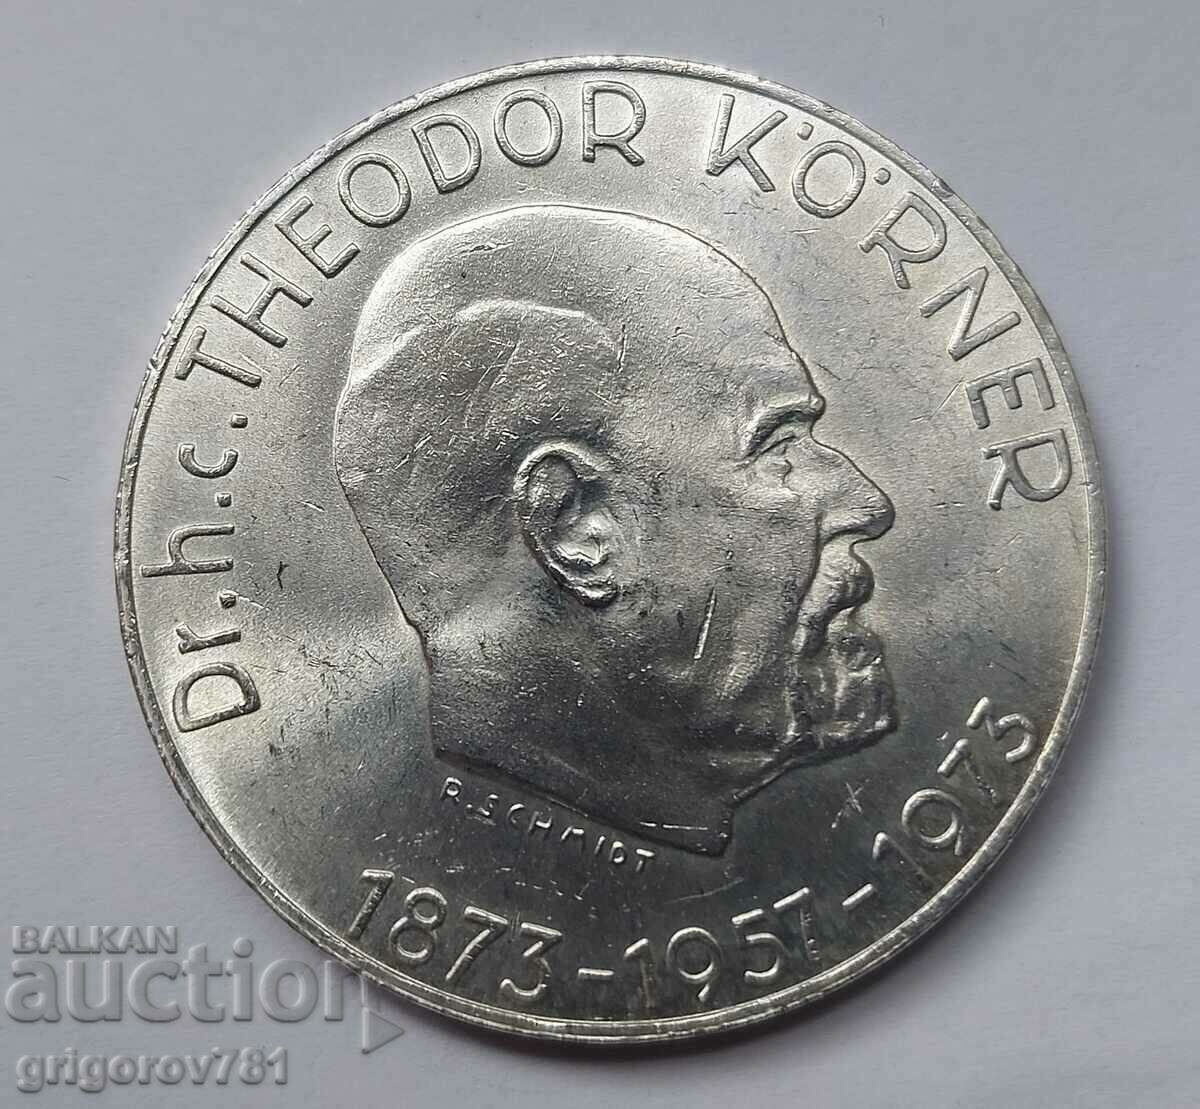 50 Shilling Silver Αυστρία 1973 - Ασημένιο νόμισμα #1